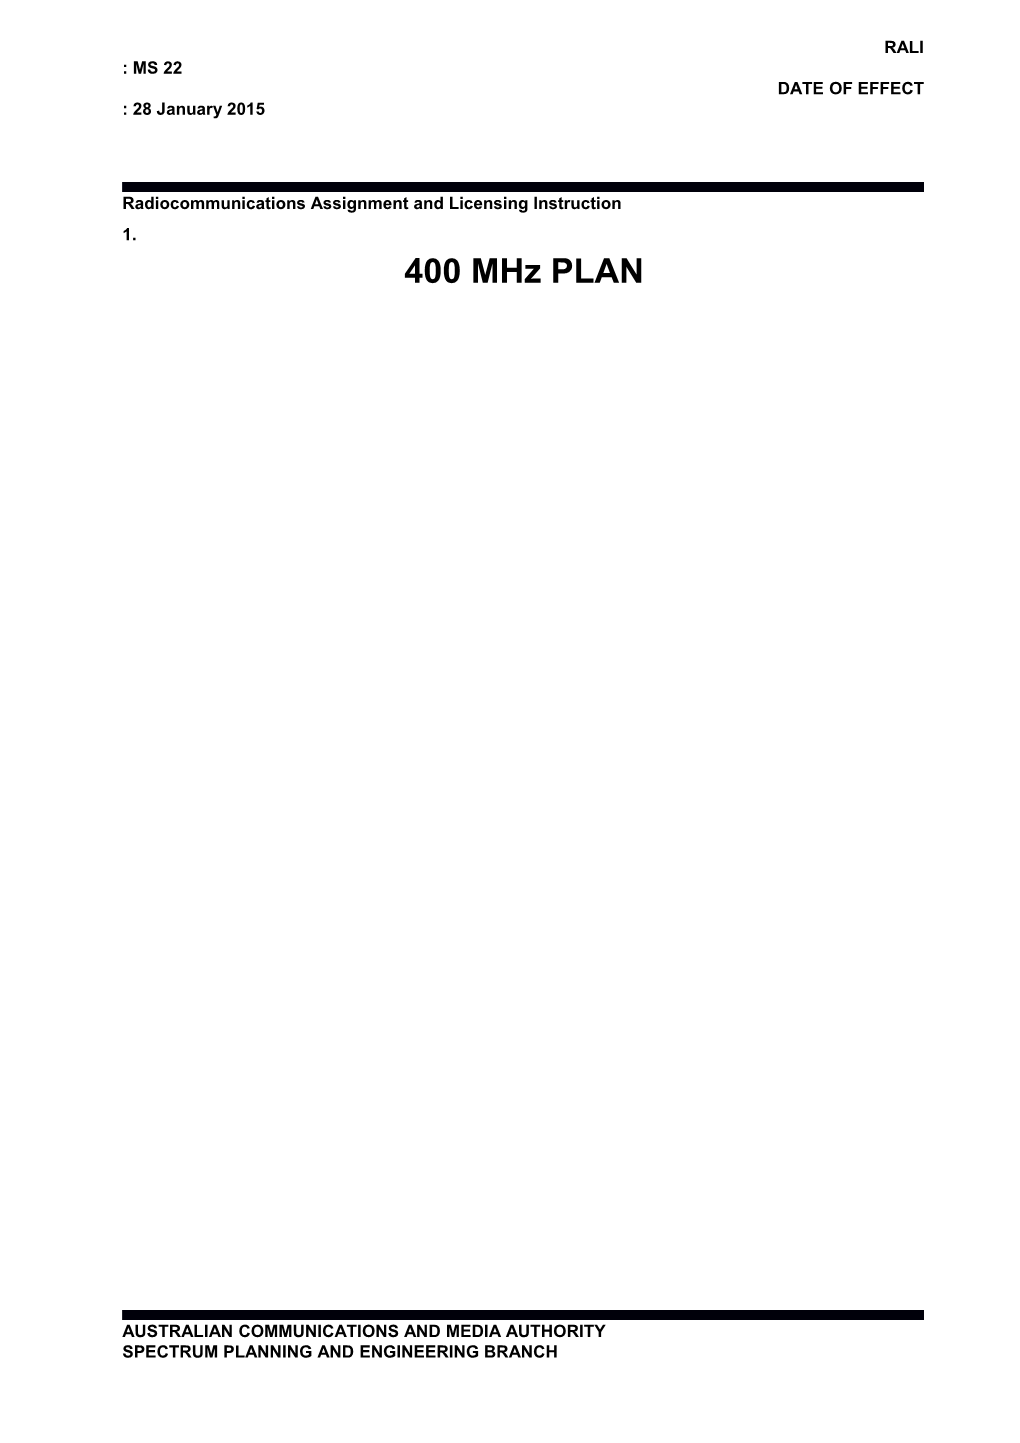 RALI MS22 - 400 Mhz Plan